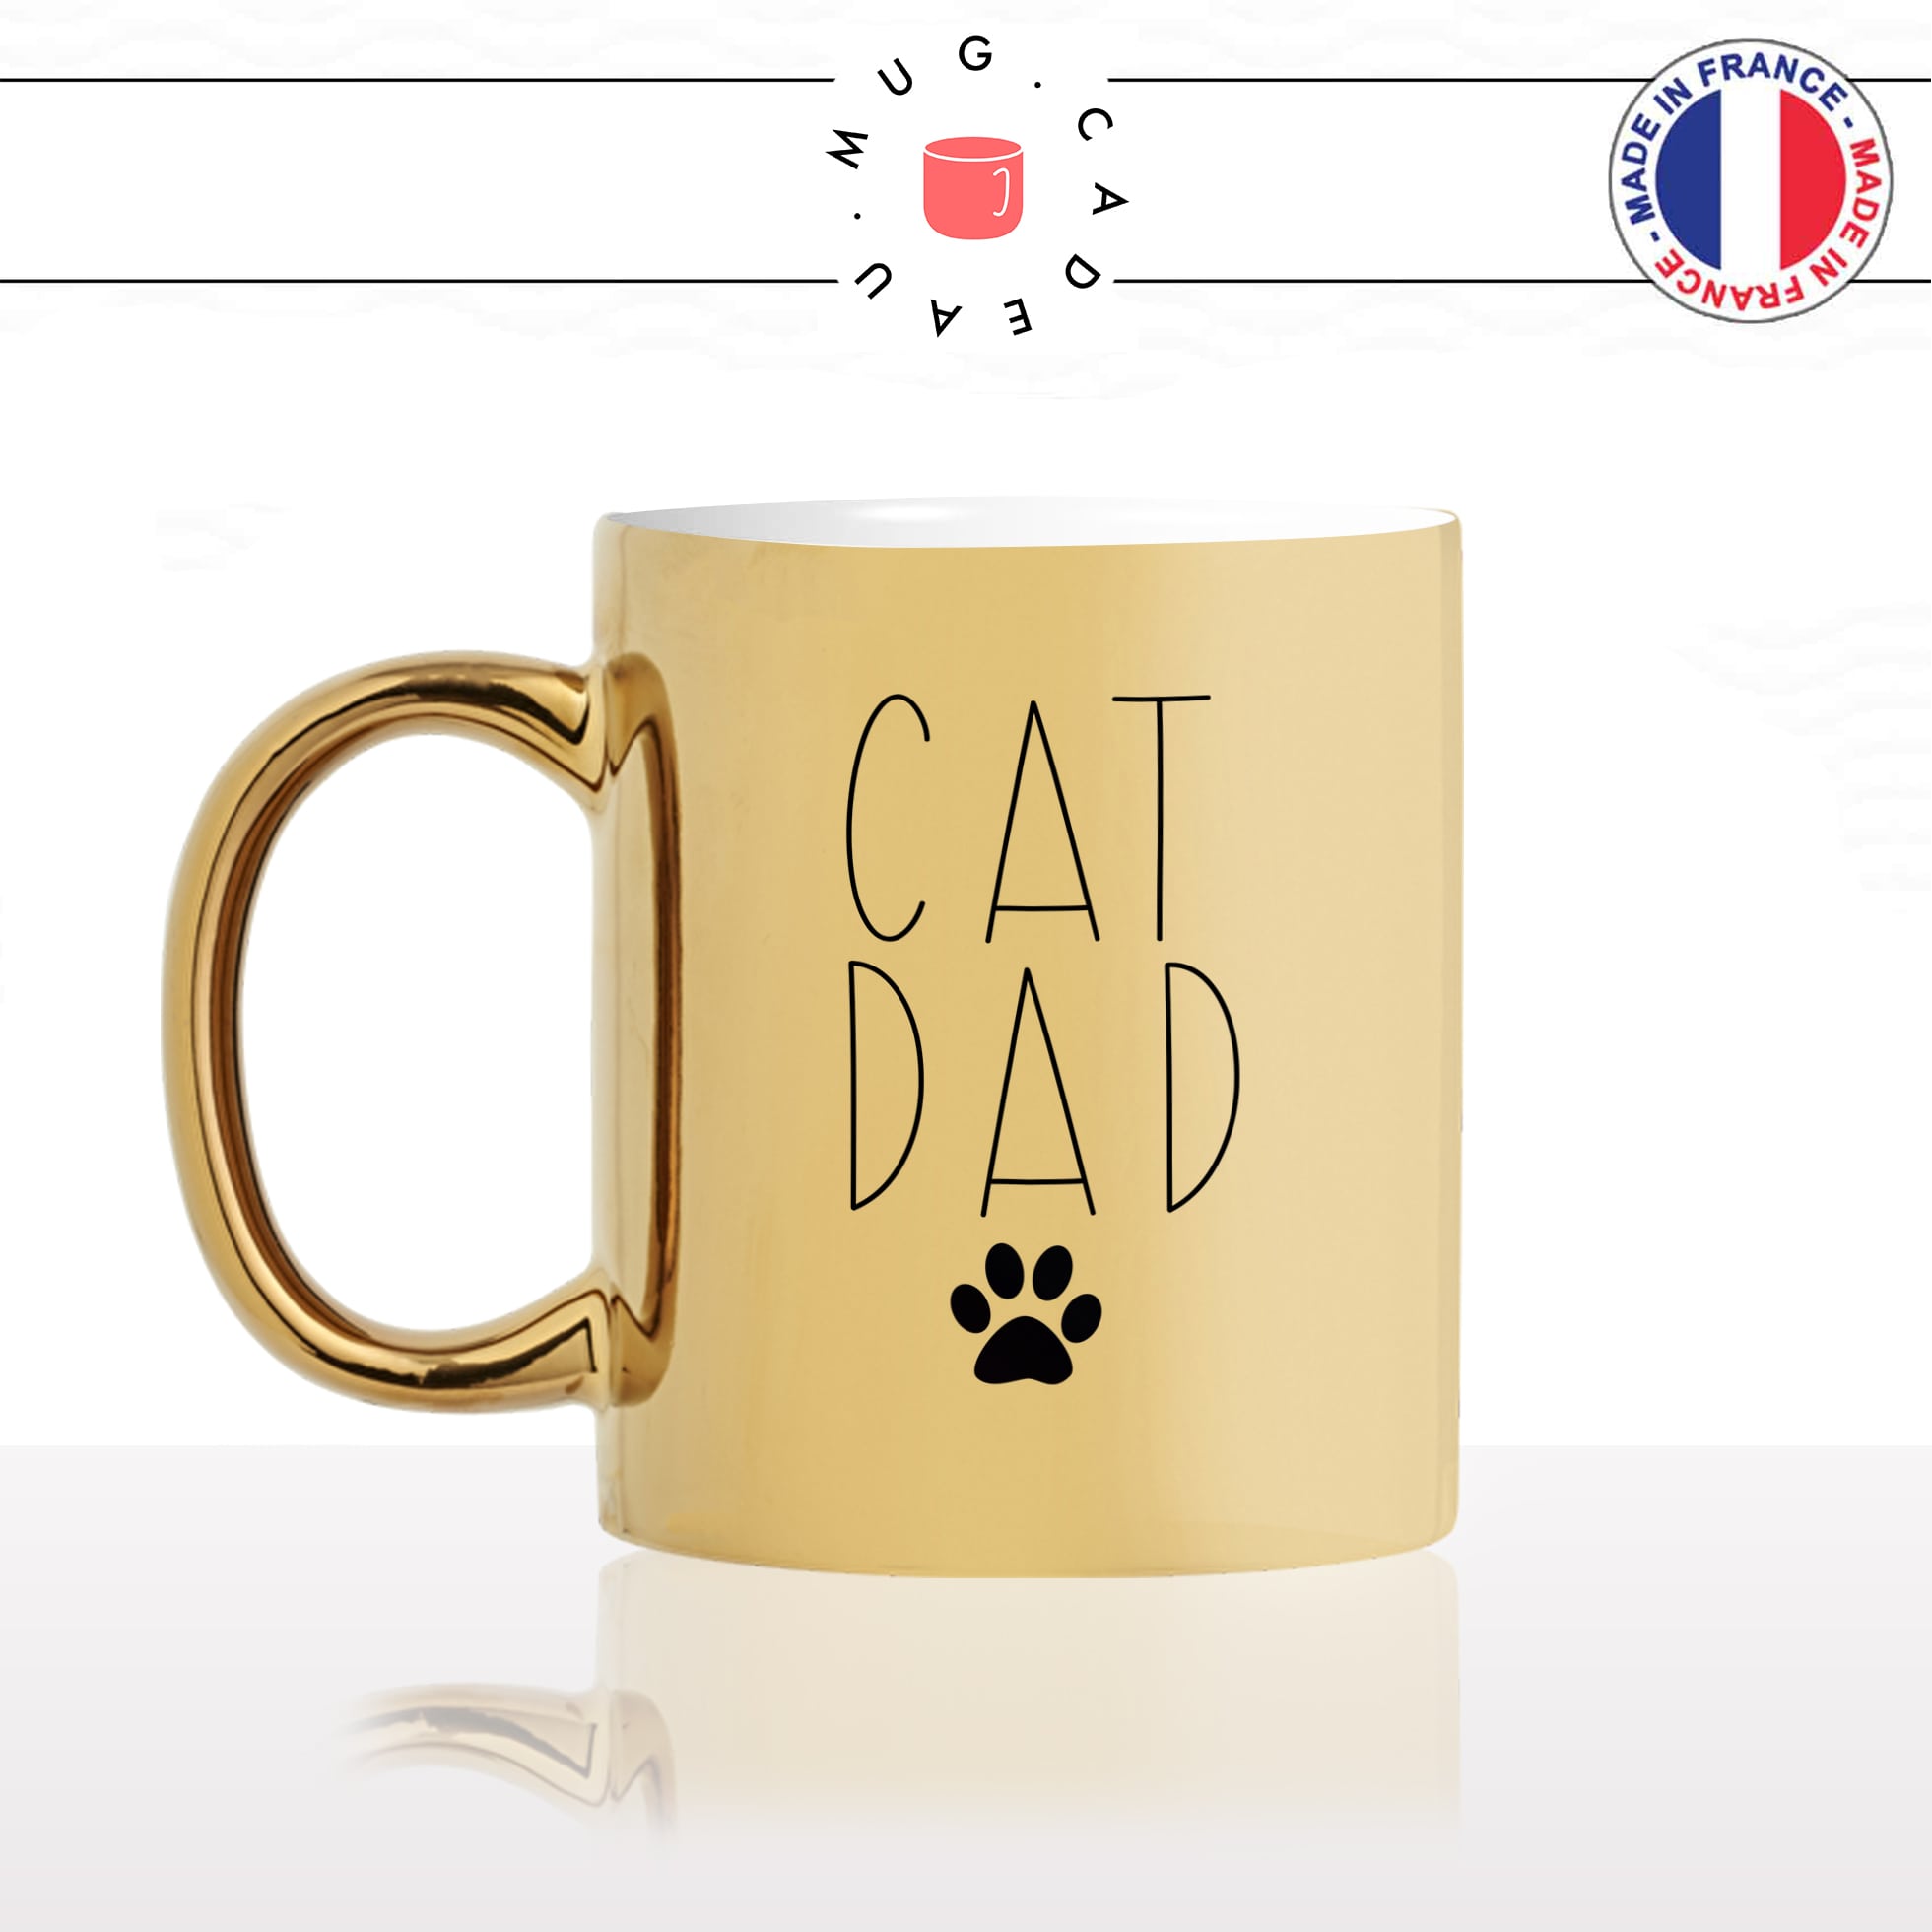 mug-tasse-or-doré-cat-dad-papa-chats-mignon-animal-chaton-dessin-noir-fun-café-thé-idée-cadeau-original-personnalisable-gold-min